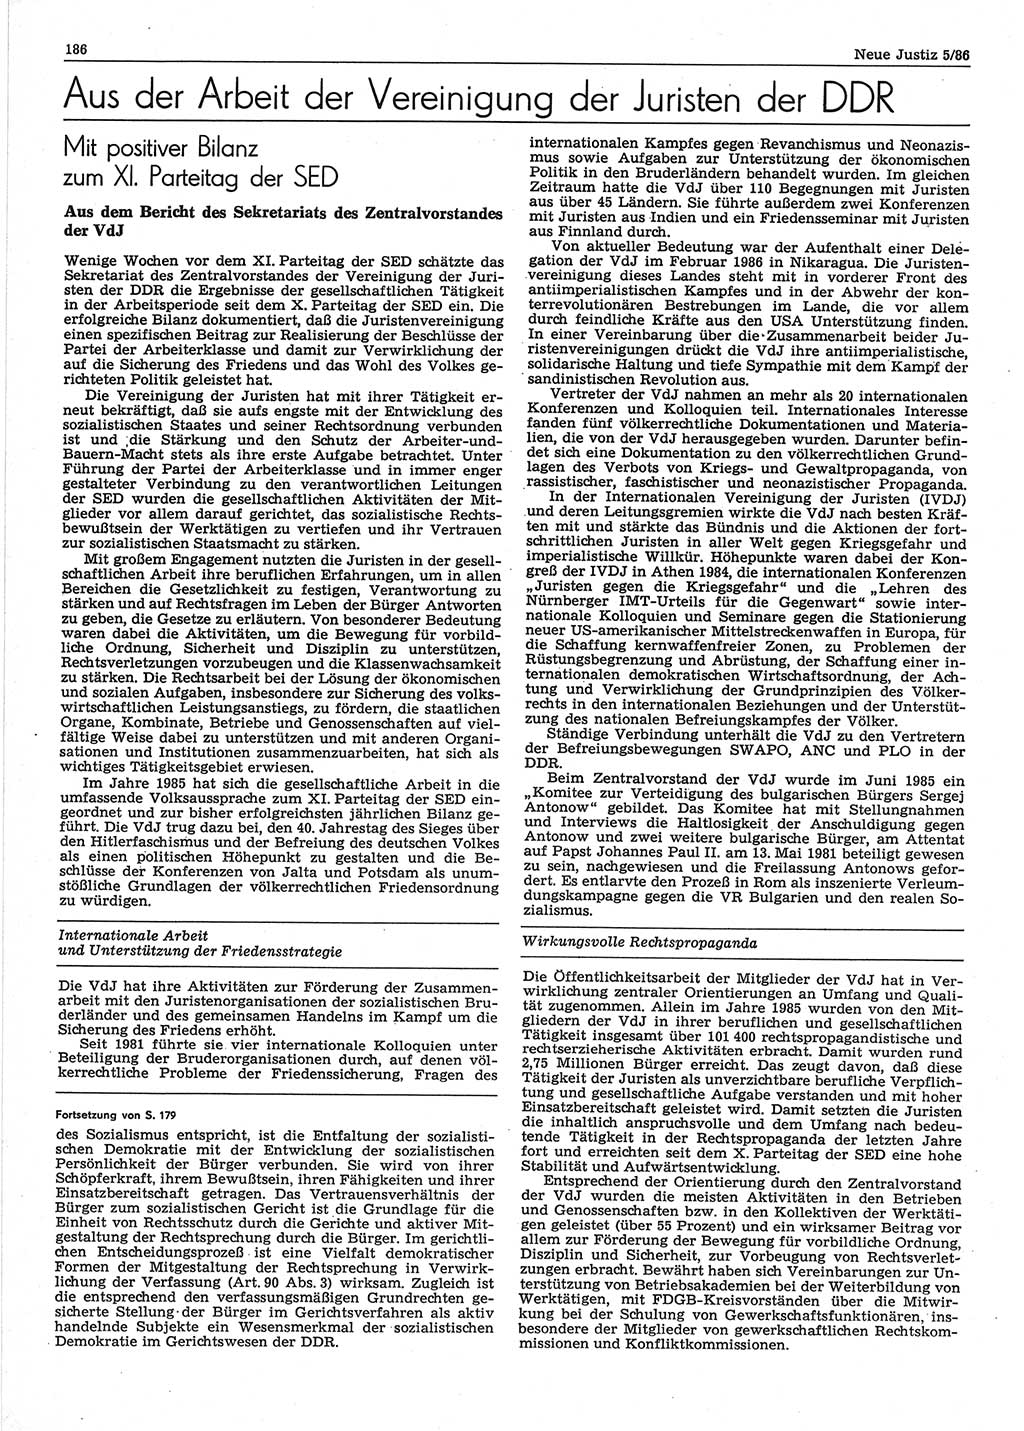 Neue Justiz (NJ), Zeitschrift für sozialistisches Recht und Gesetzlichkeit [Deutsche Demokratische Republik (DDR)], 40. Jahrgang 1986, Seite 186 (NJ DDR 1986, S. 186)